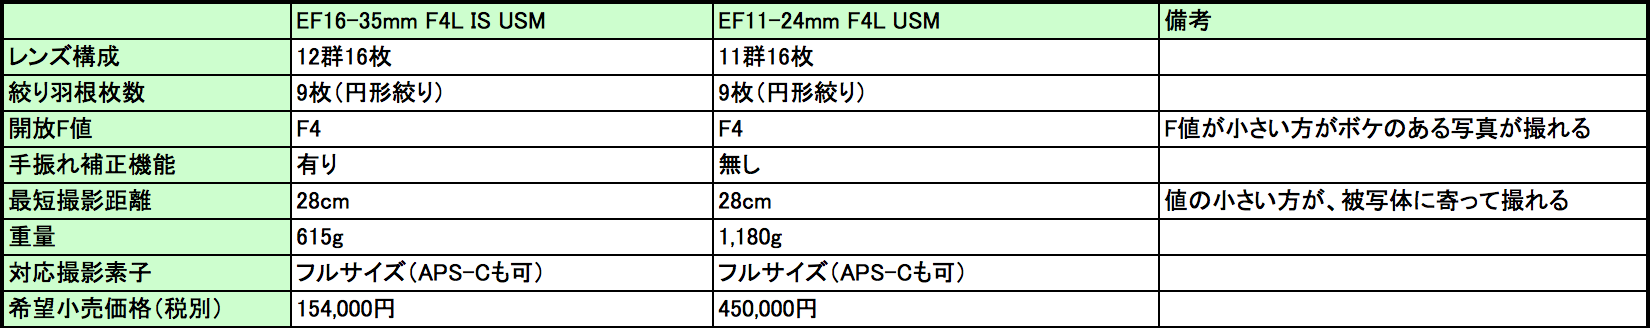 EF11-24mm vs EF16-35mm